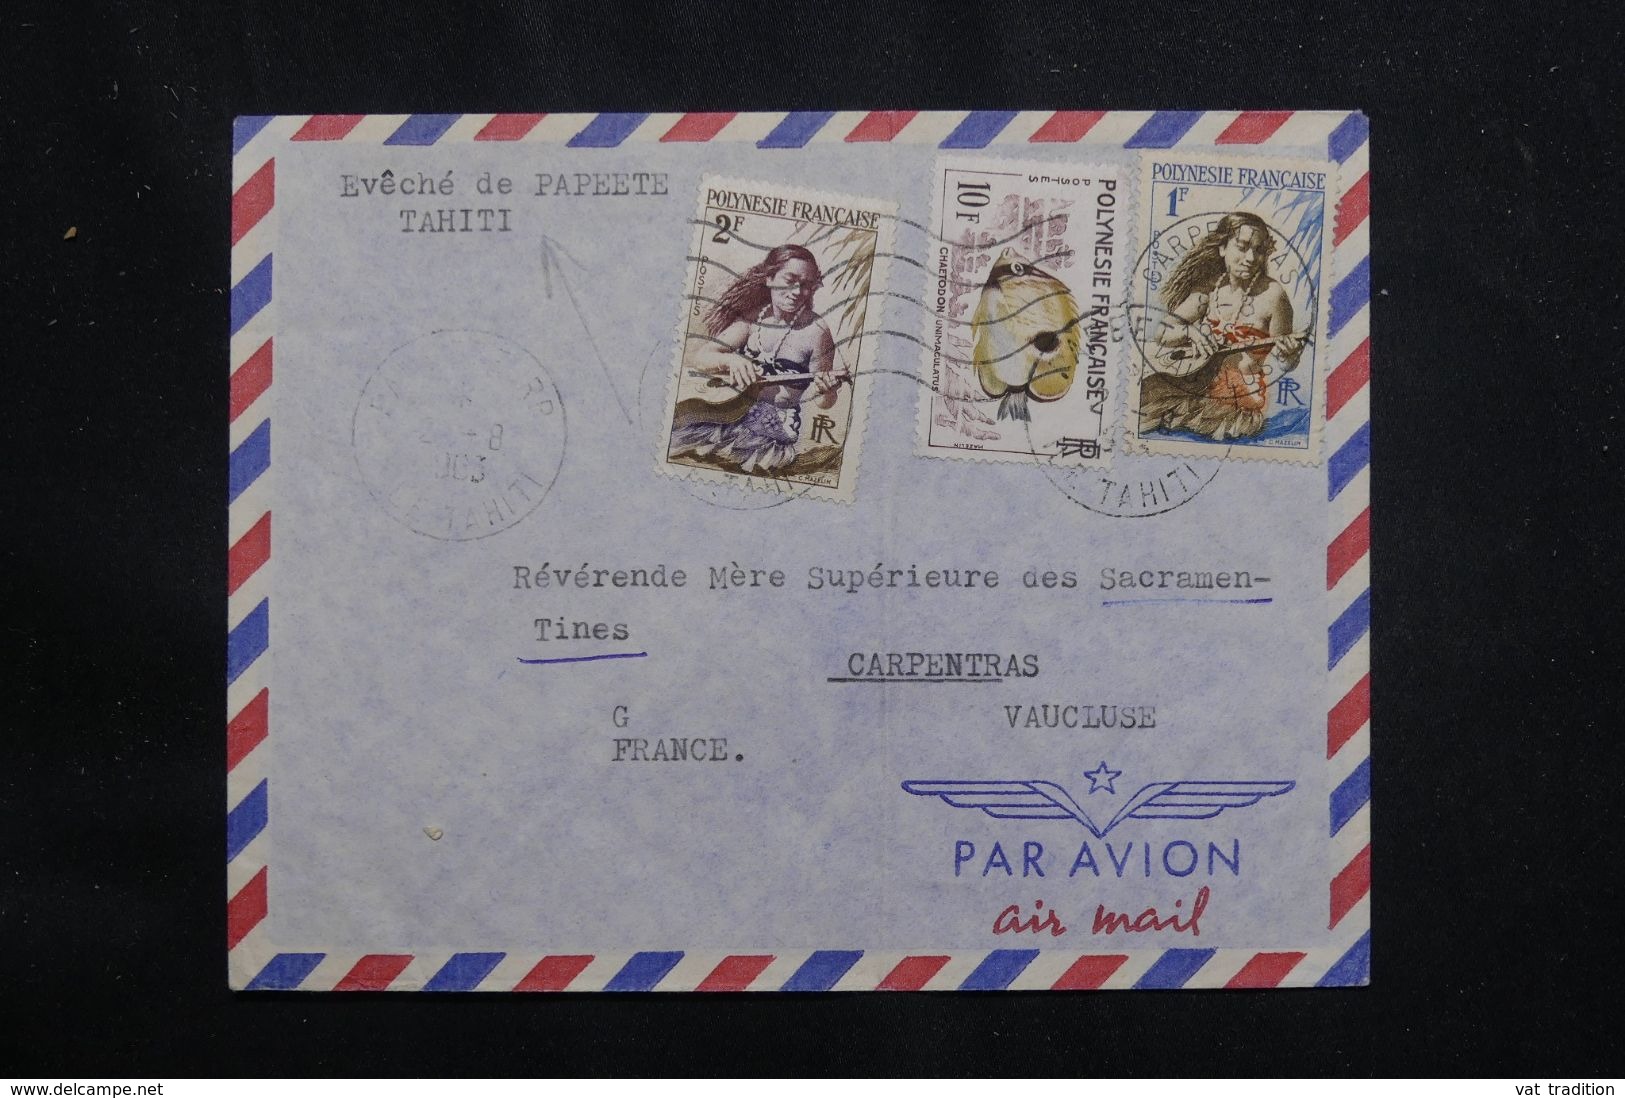 POLYNÉSIE - Enveloppe De L’évêché De Papeete En 1963 Pour La France - L 65935 - Storia Postale